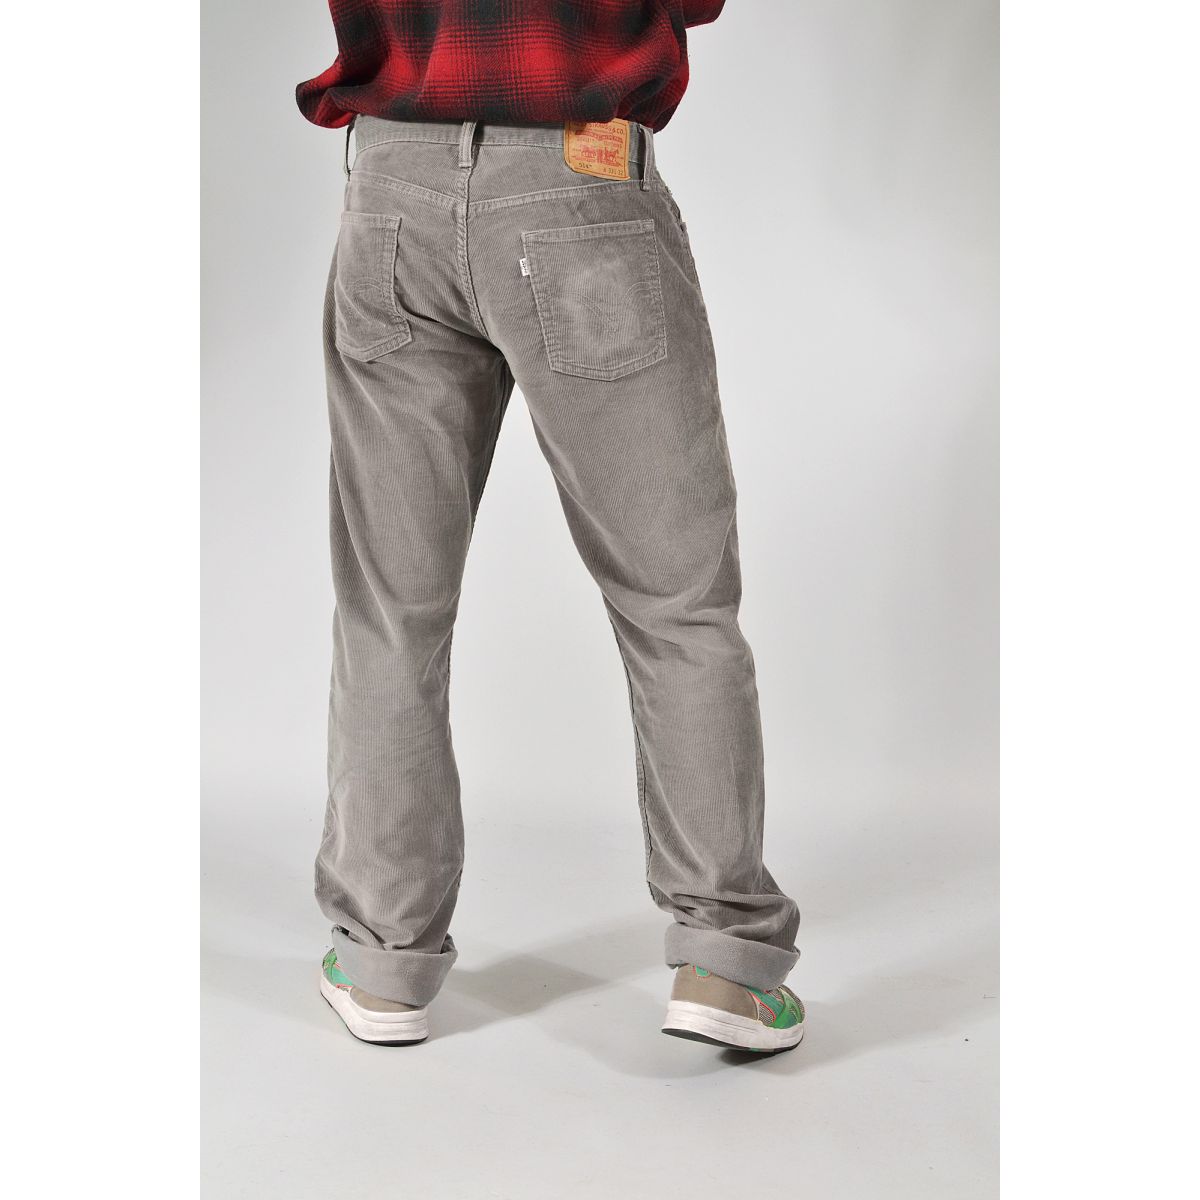 Levis Corduroy 'High Loose' Pants Size 32 (s)